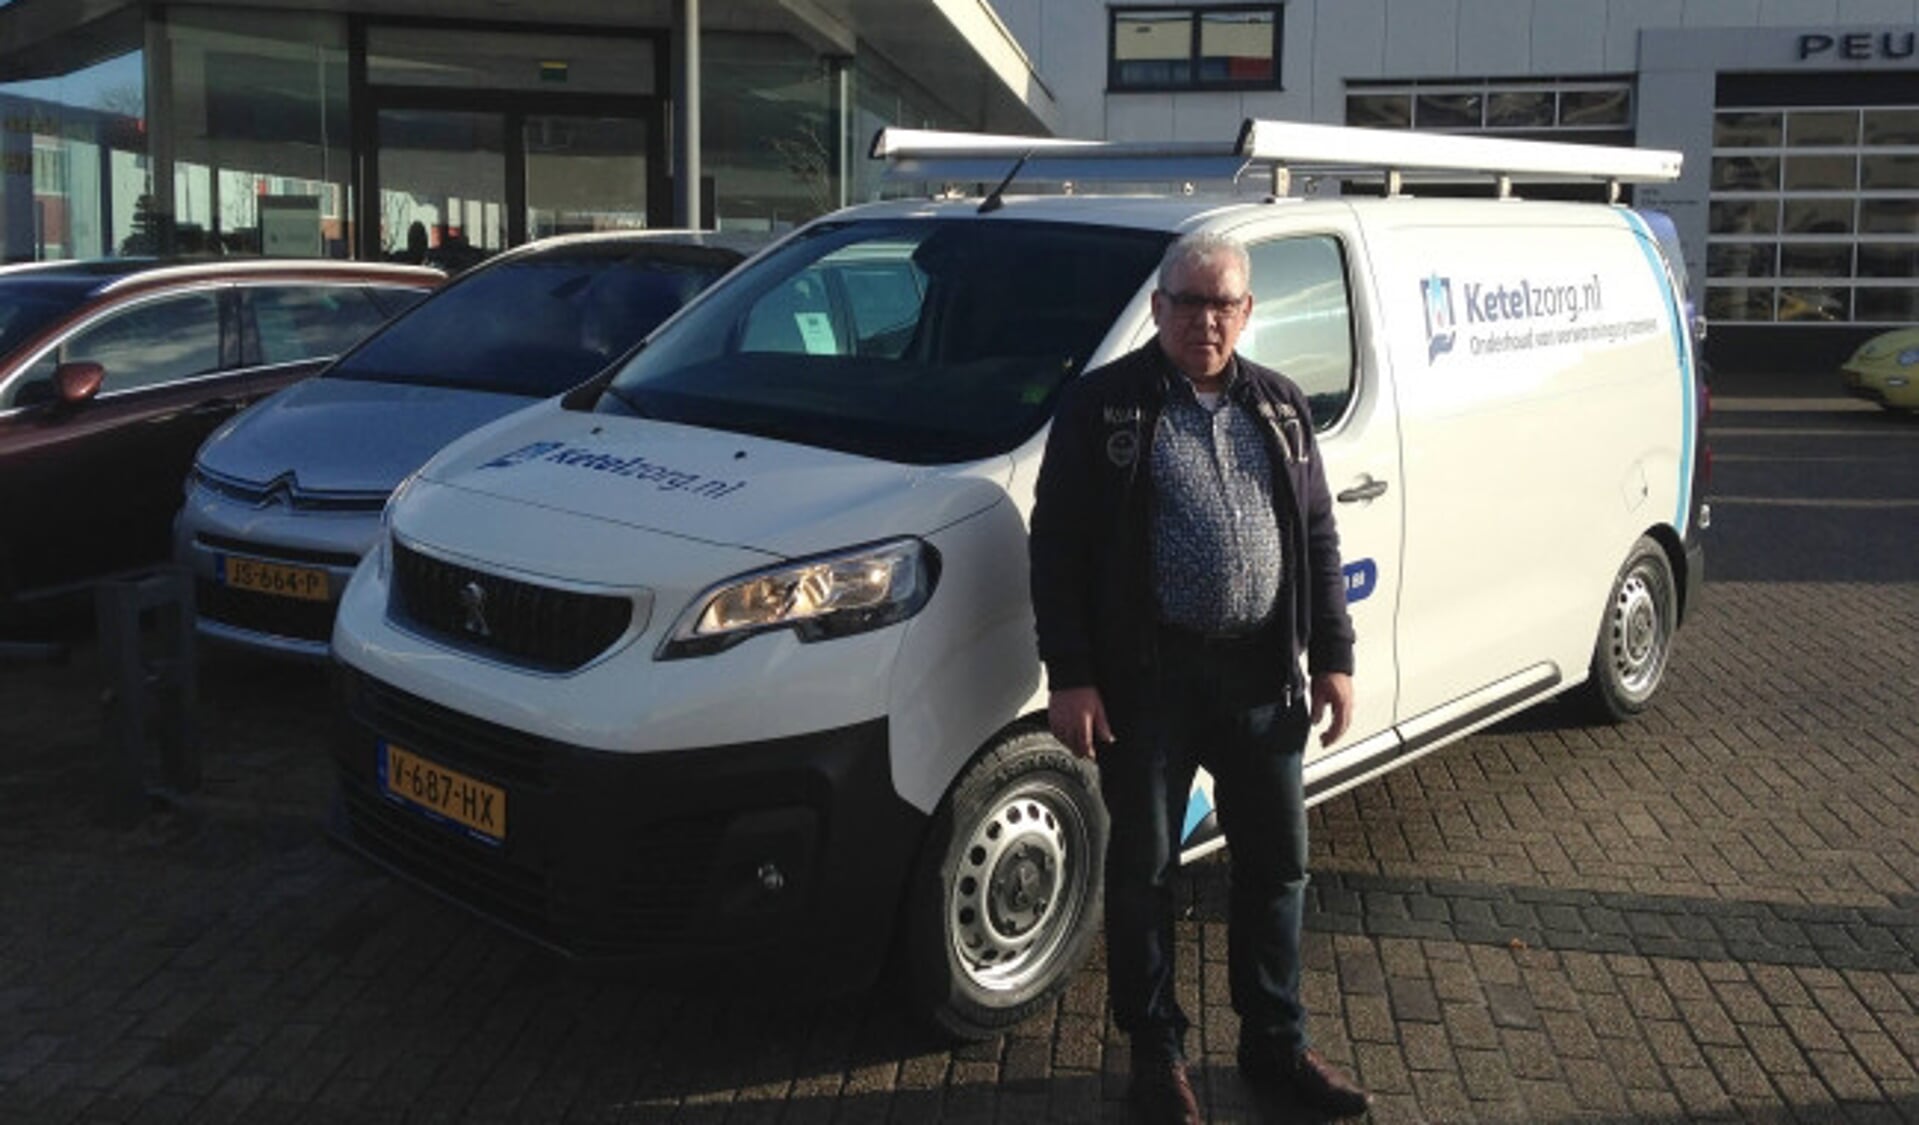  Winus Bos bedrijfsleider van ketelzorg Kampen neemt hier de nieuwe service bus van AutoPalace in ontvangst.